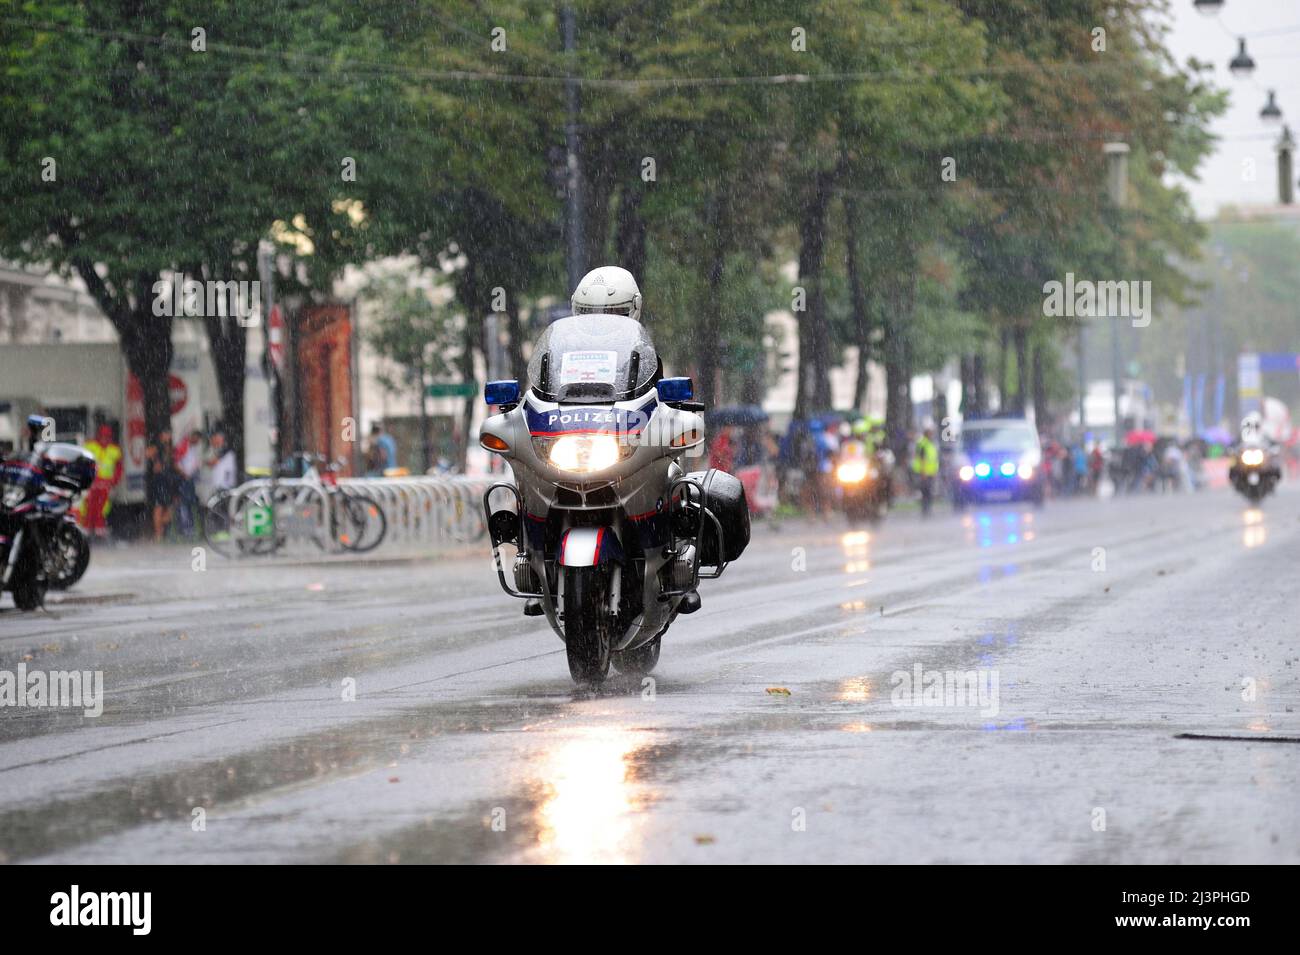 Vienne, Autriche. 13th juillet 2014. Excursion en vélo en Autriche, dernière étape à Vienne. La police motorisée escorte les cyclistes Banque D'Images